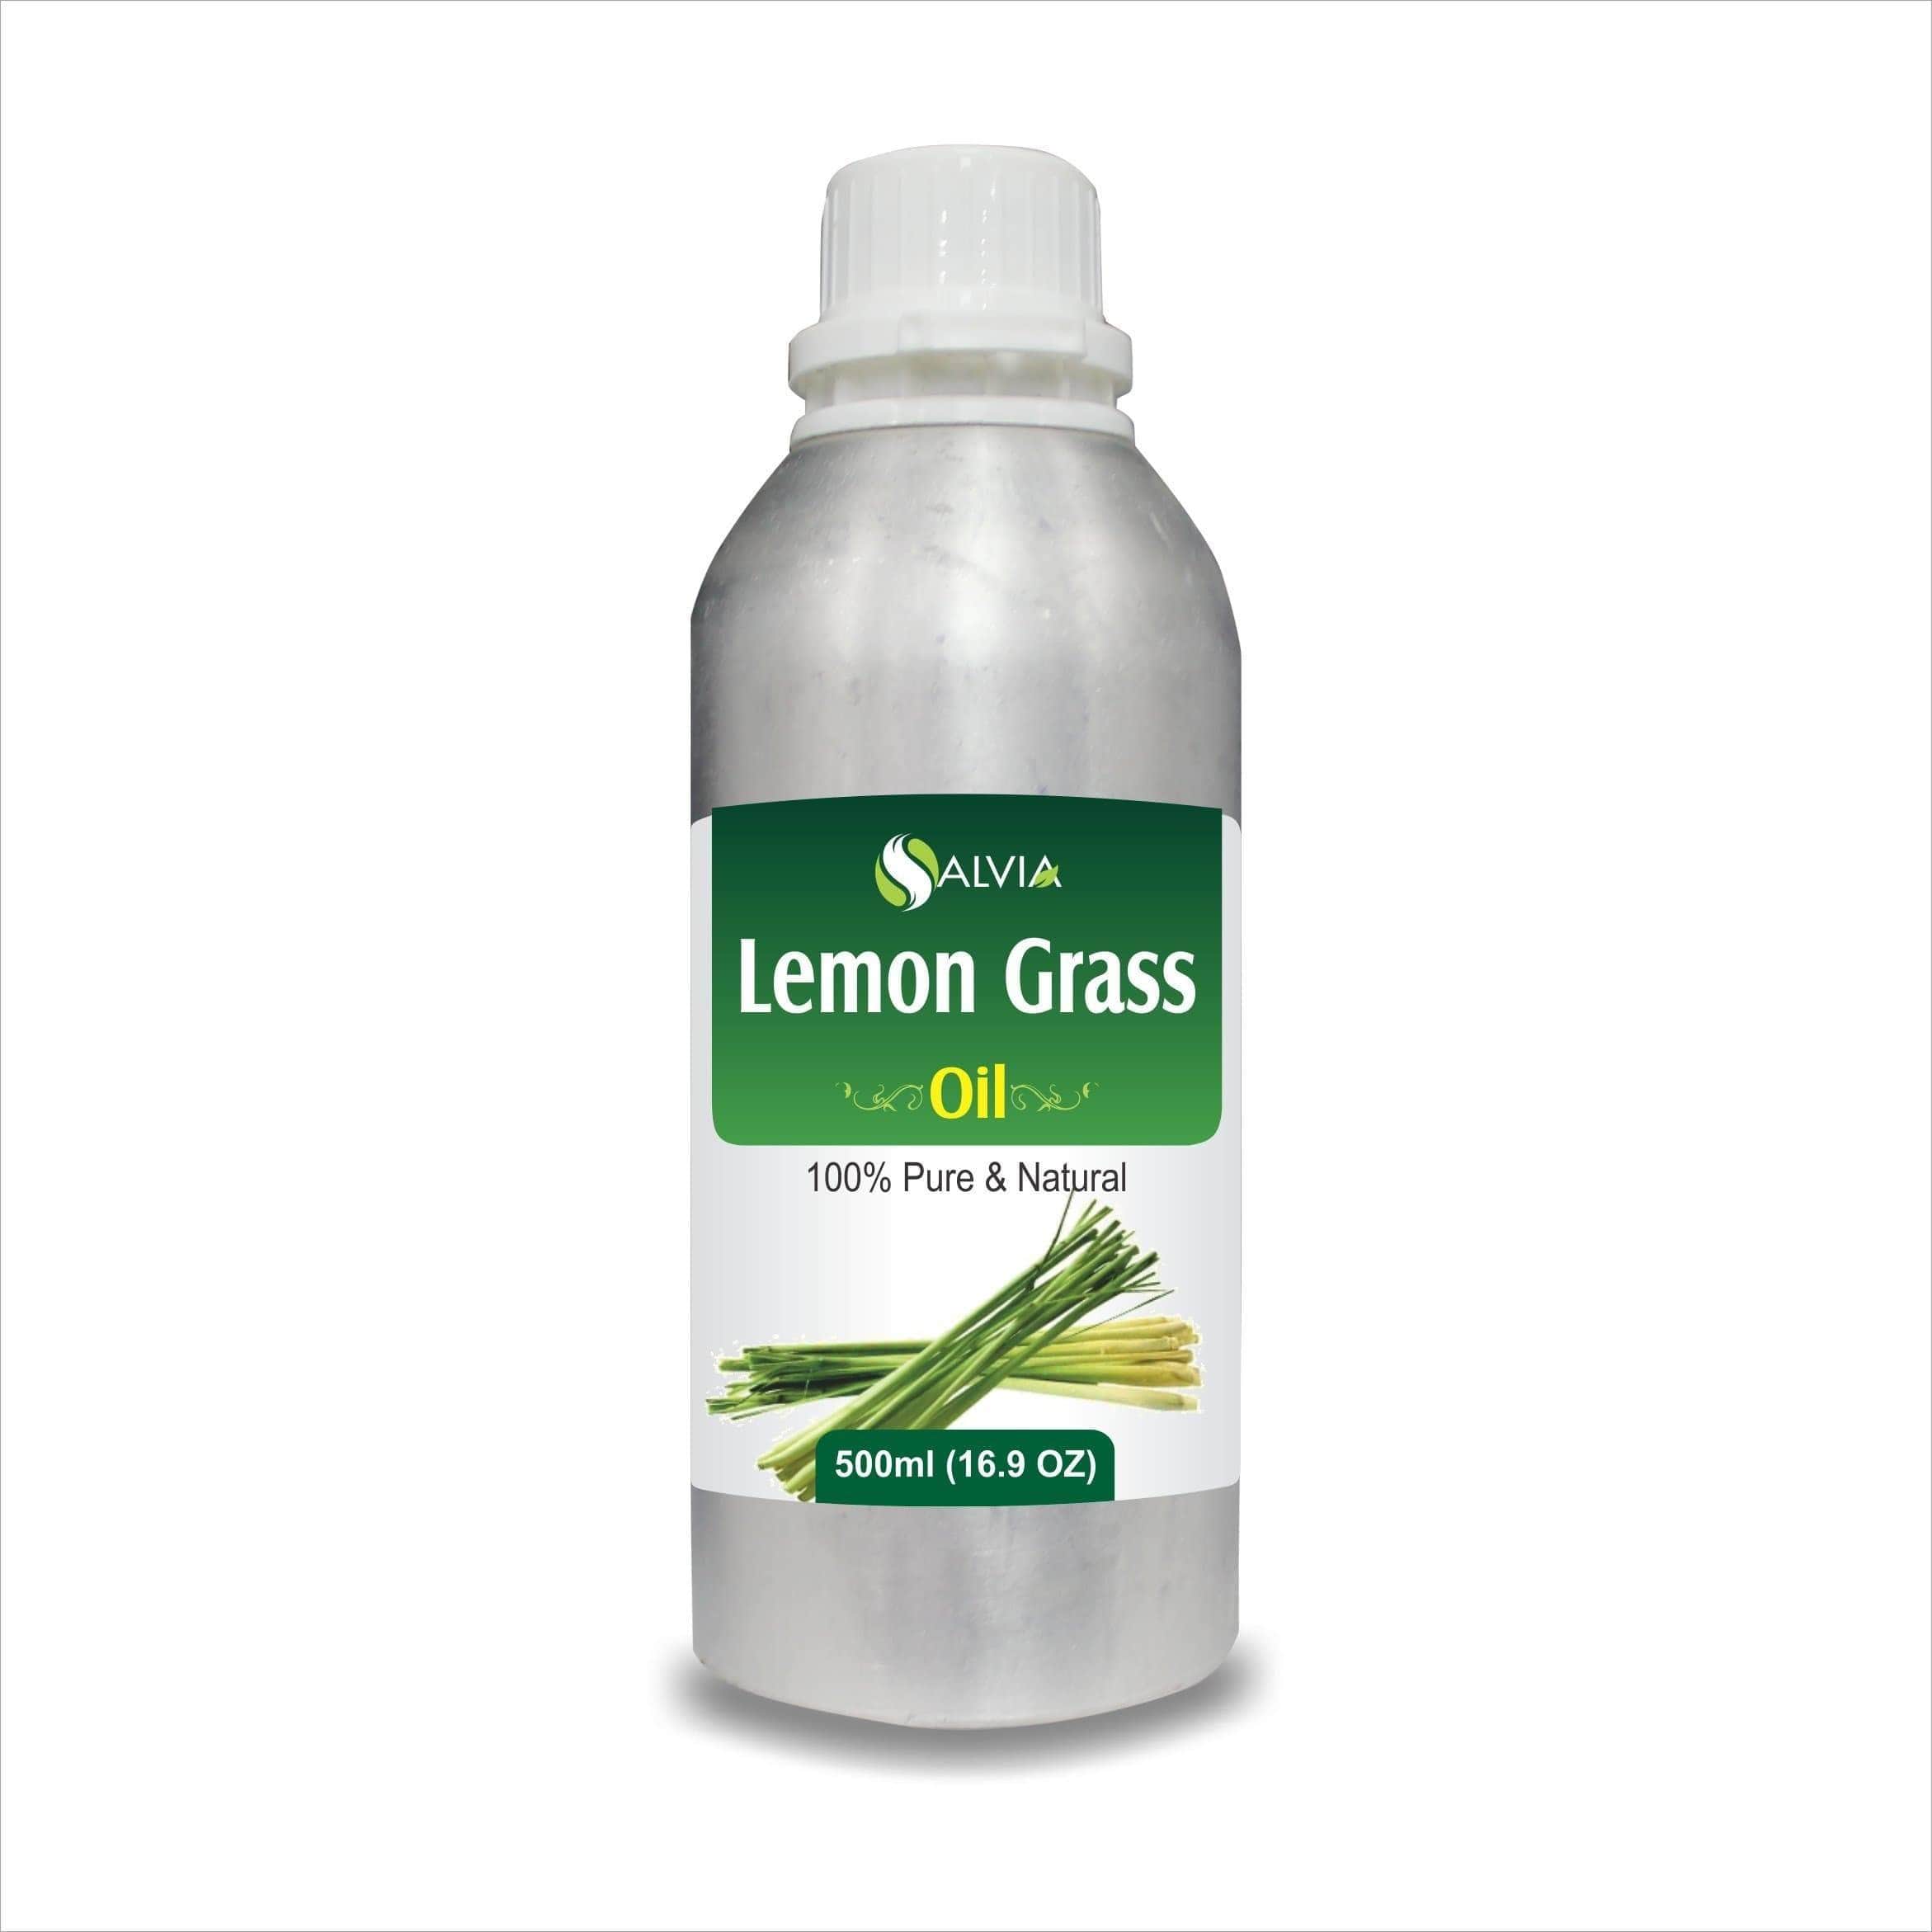 lemon grass side effects